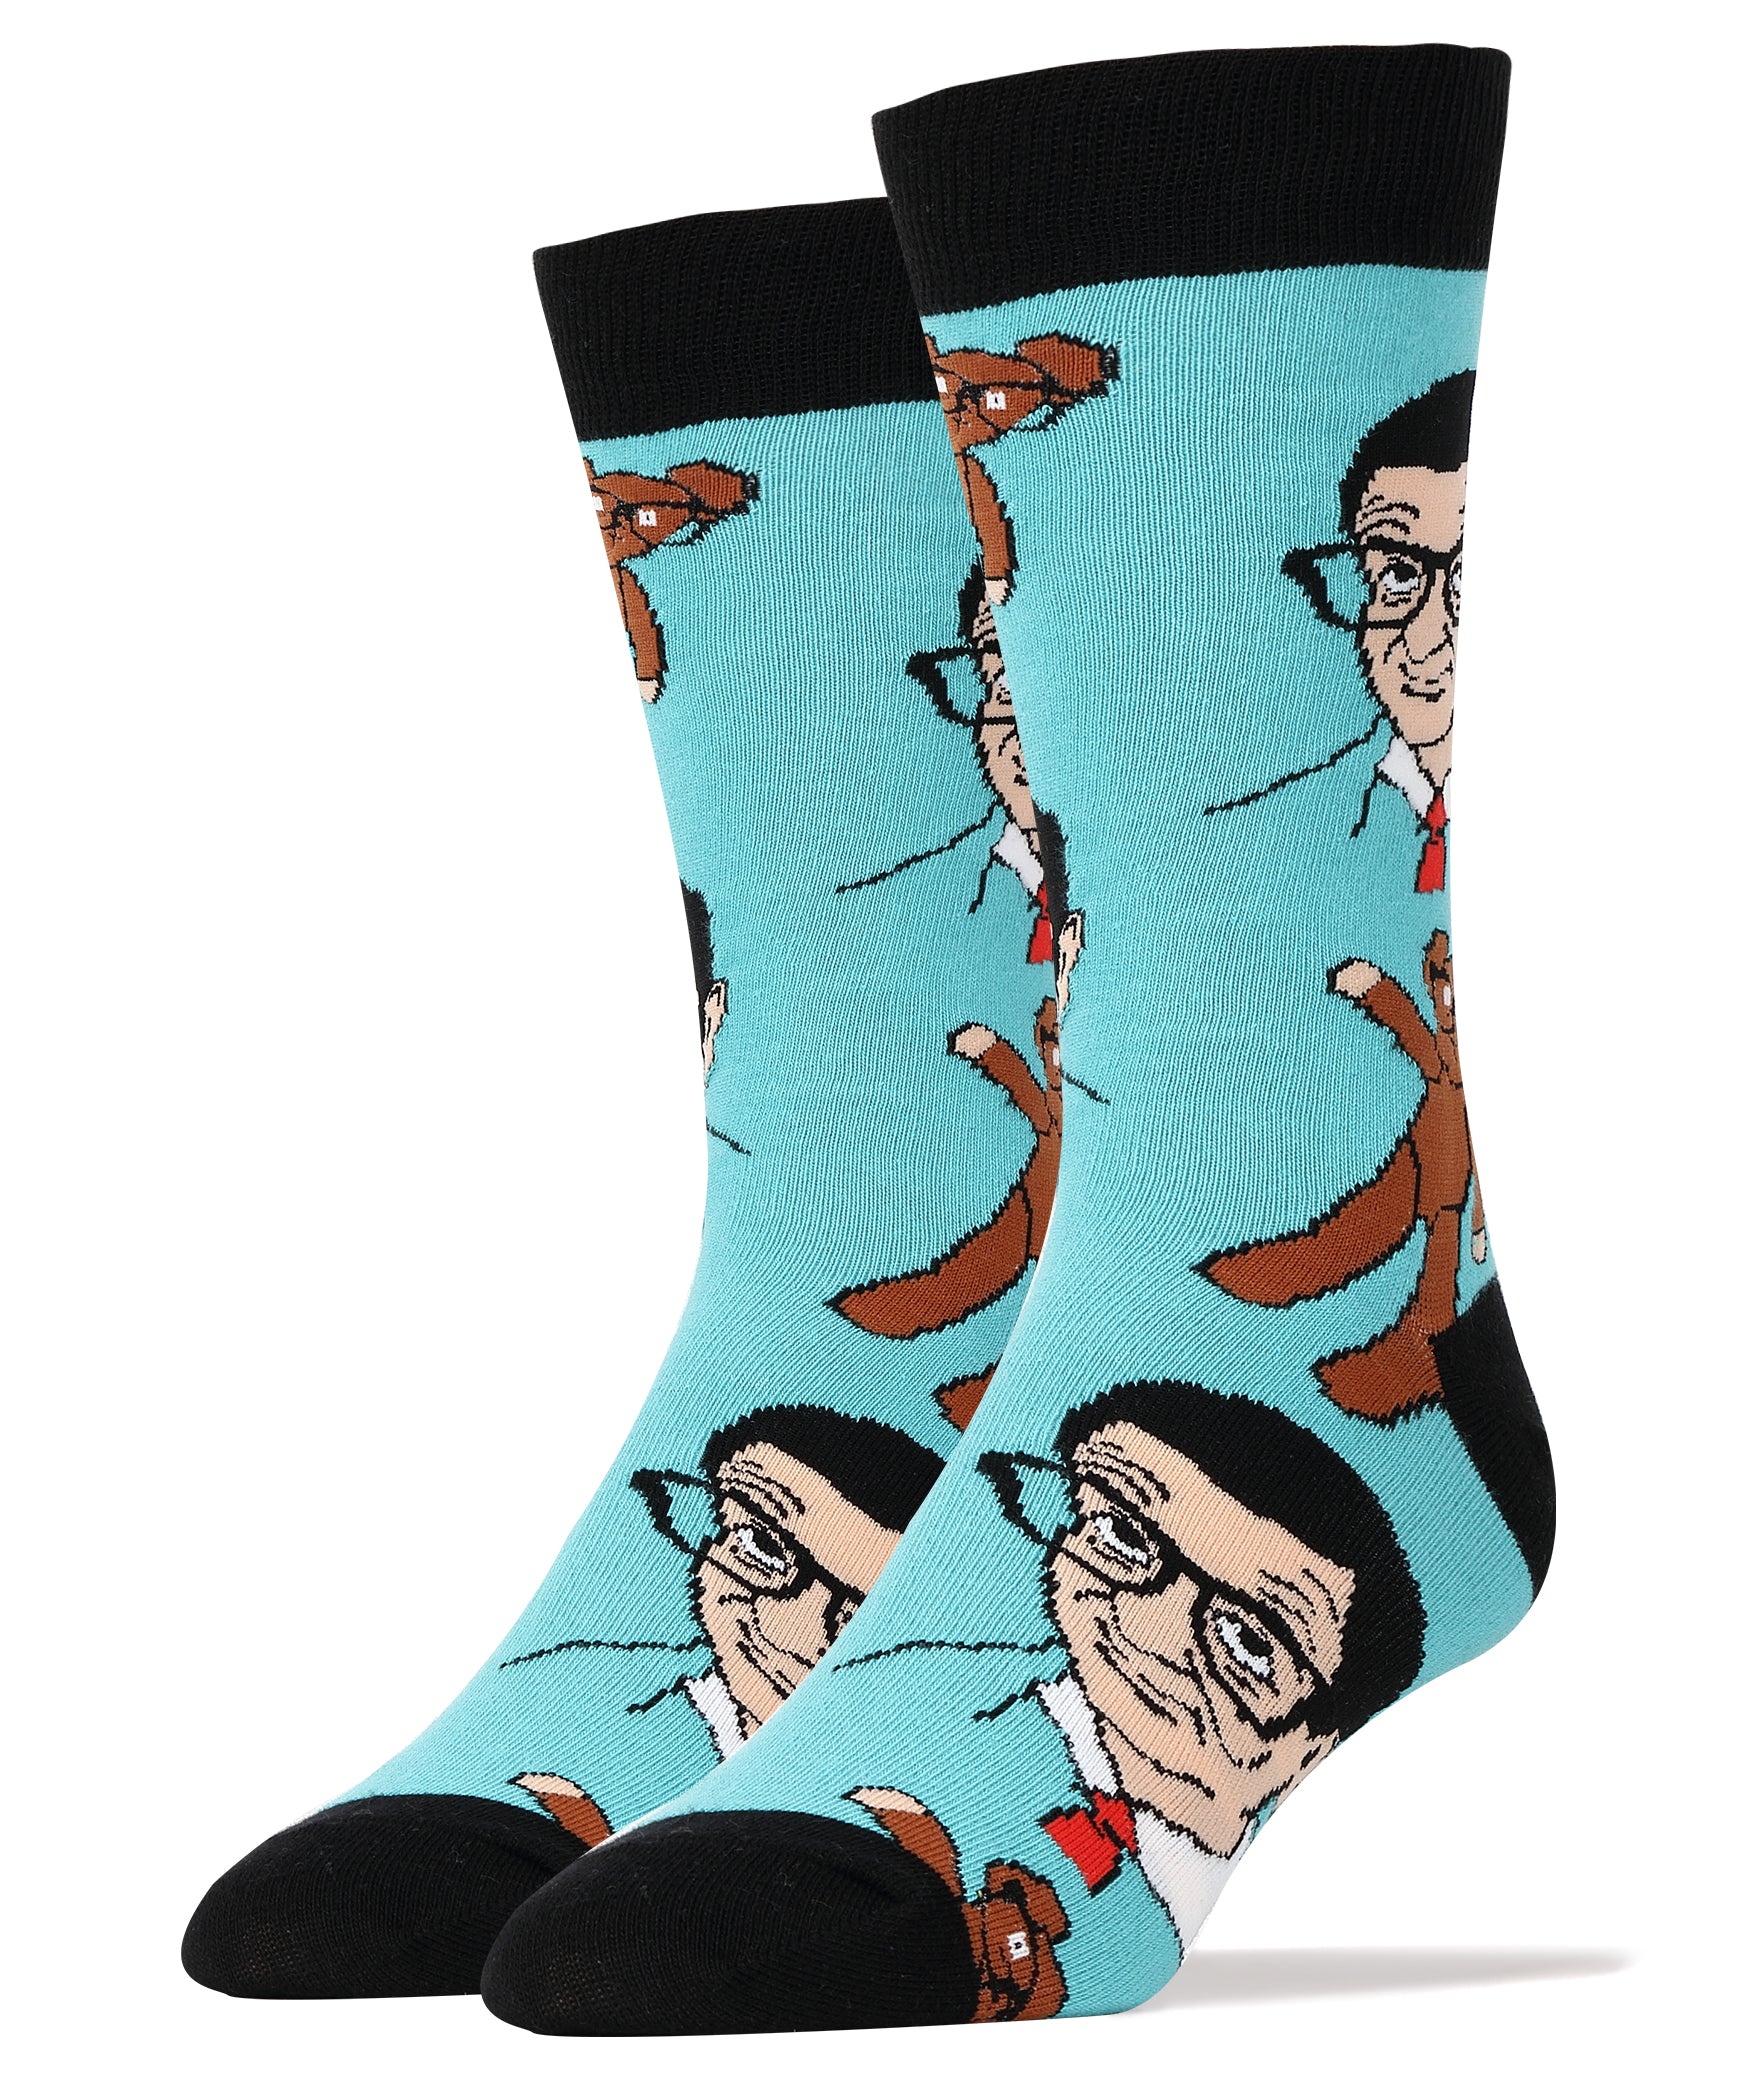 Mr Bean and Teddy Socks | Novelty Socks for Men